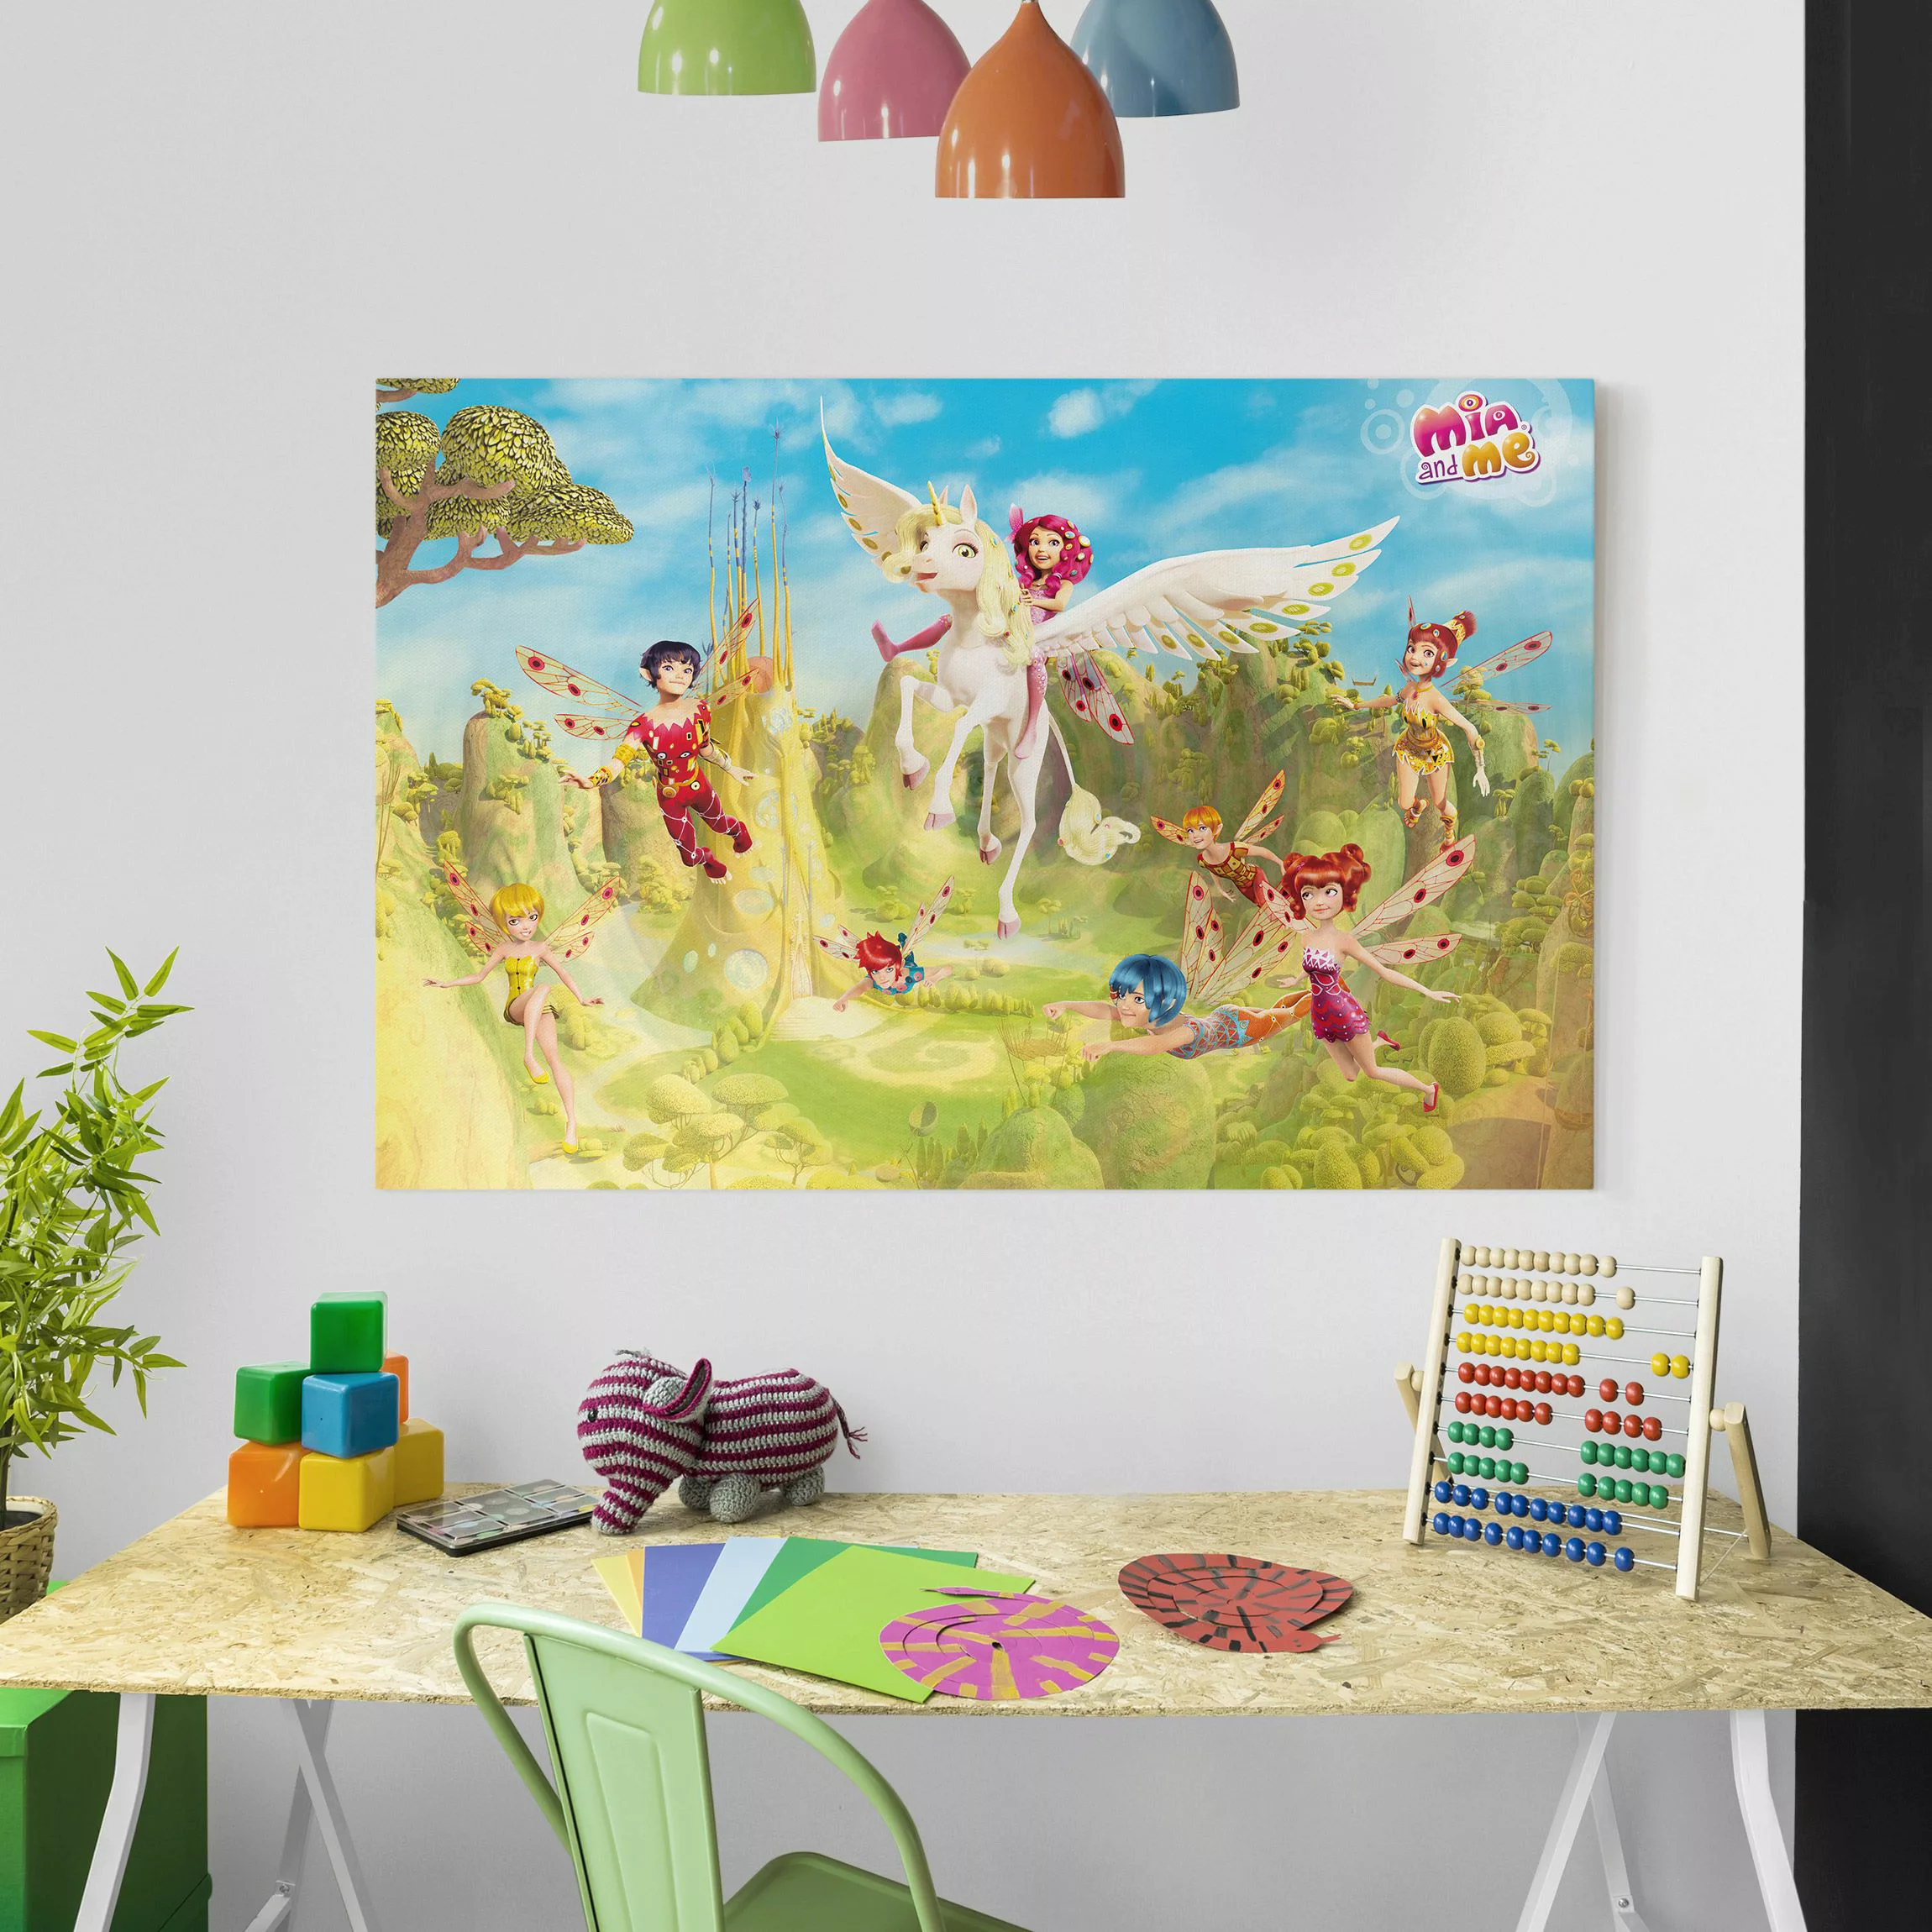 Leinwandbild Kinderzimmer - Querformat Mia and me - Über dem Elfenpalast günstig online kaufen